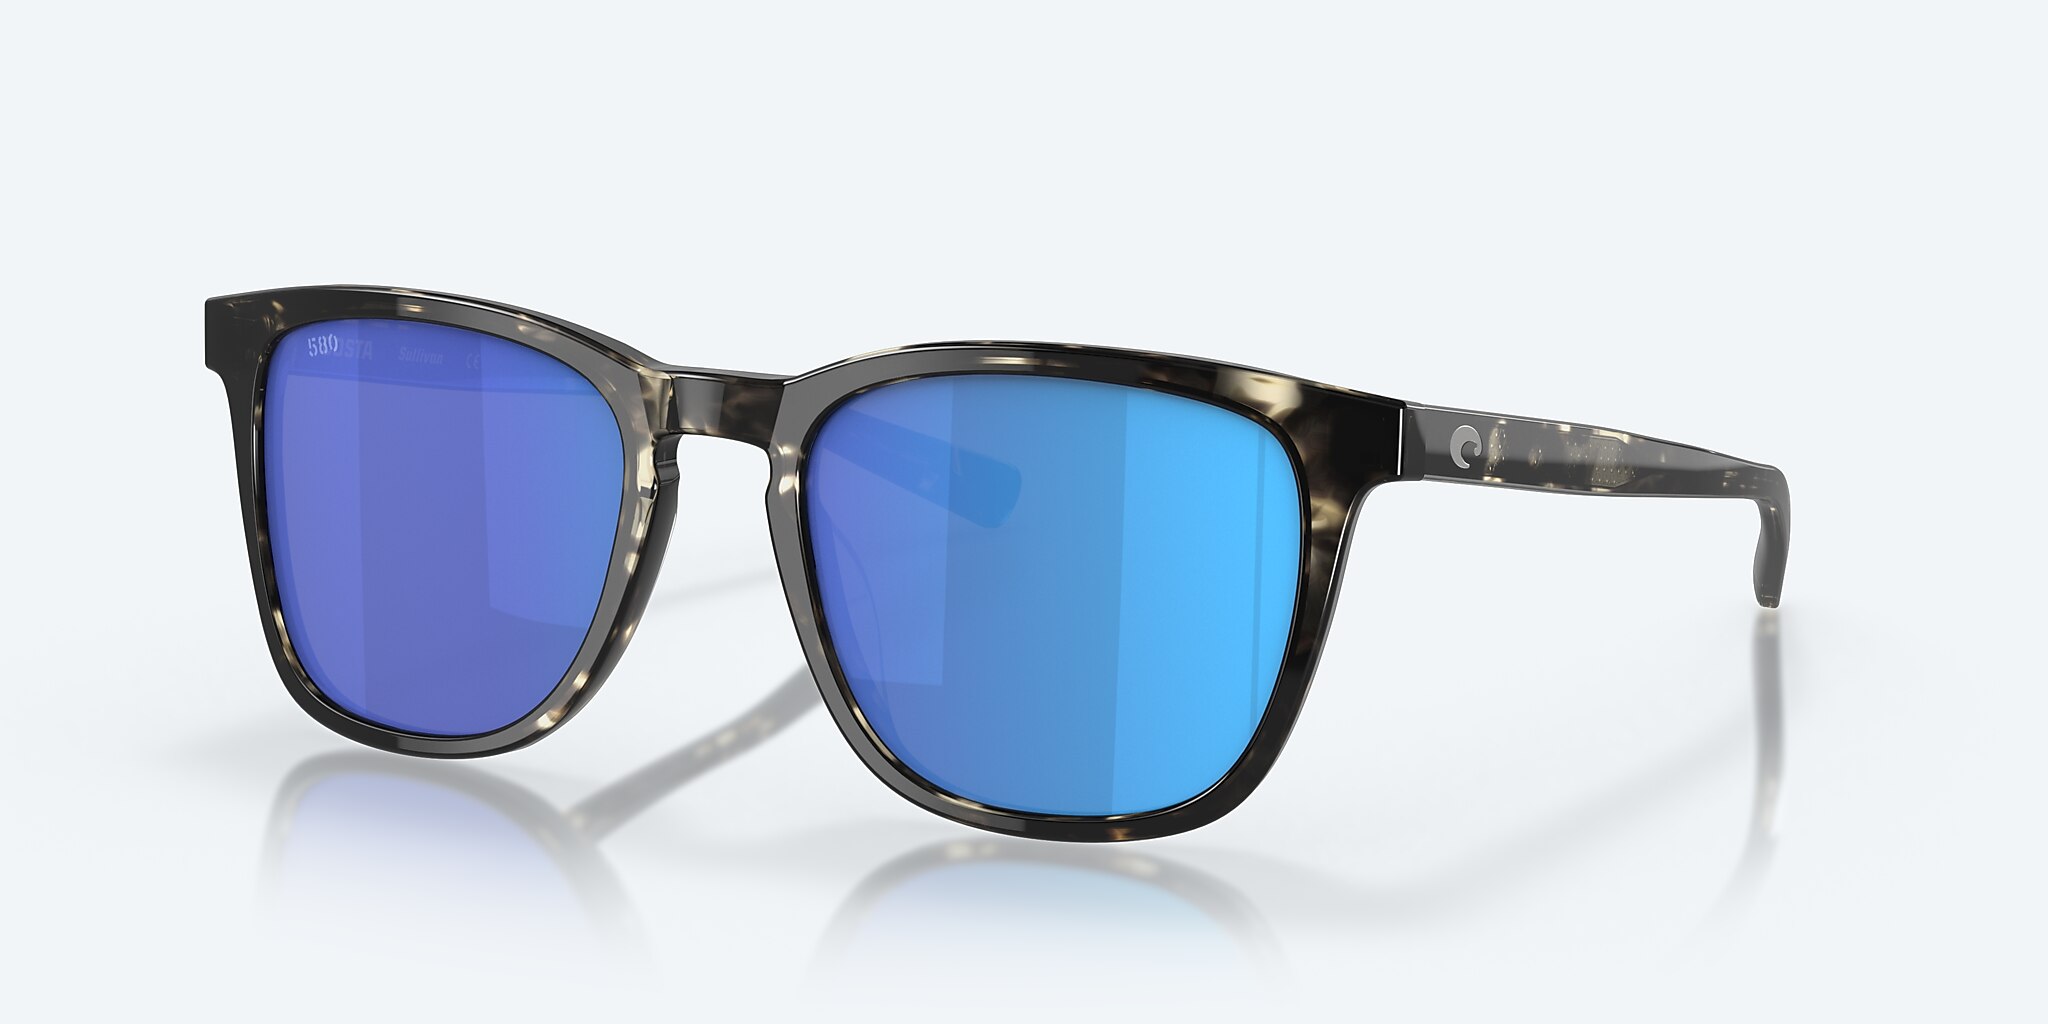 Sullivan Polarized Sunglasses in Blue Mirror | Costa Del Mar®